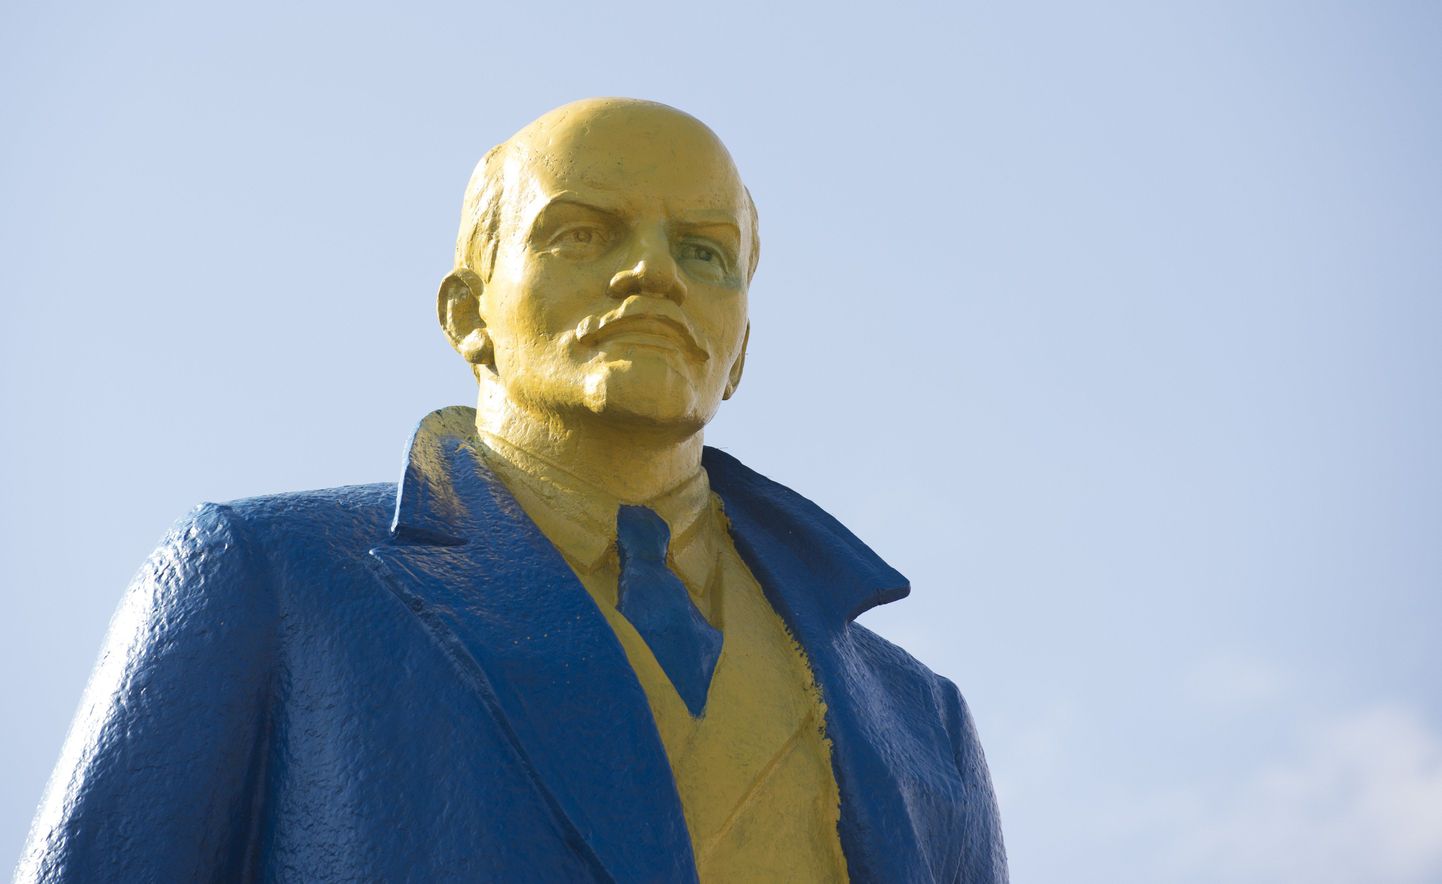 Ukraina lipu värvides Vladimir Iljitš  Lenin